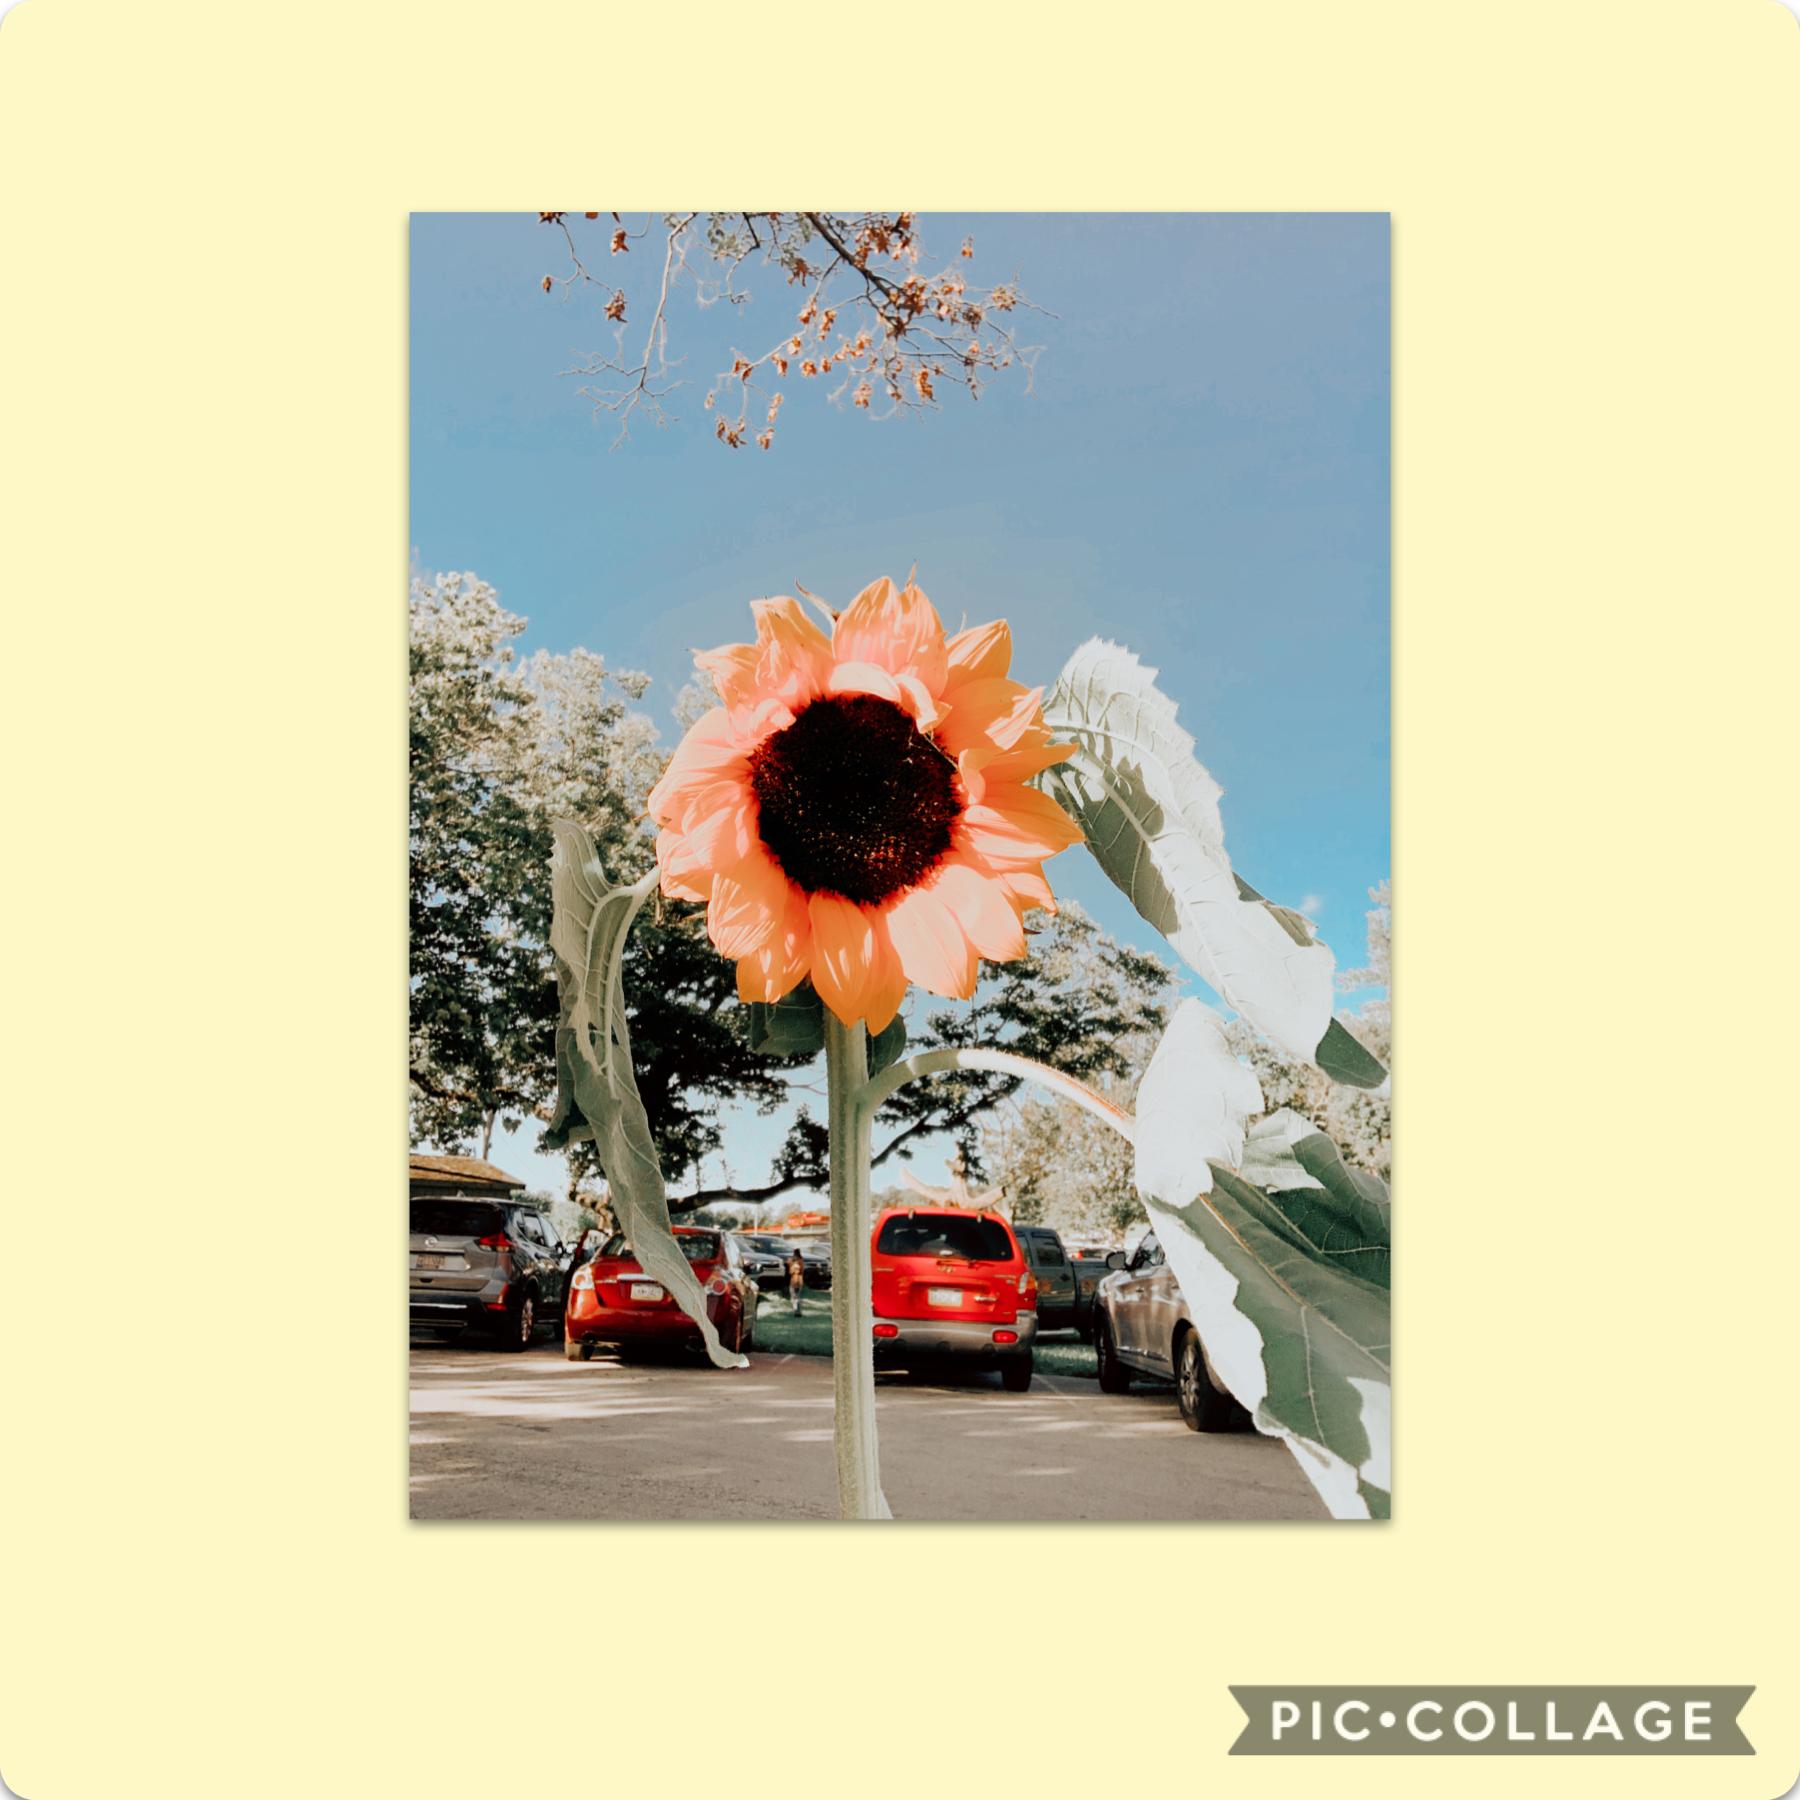 Got a sunflower today